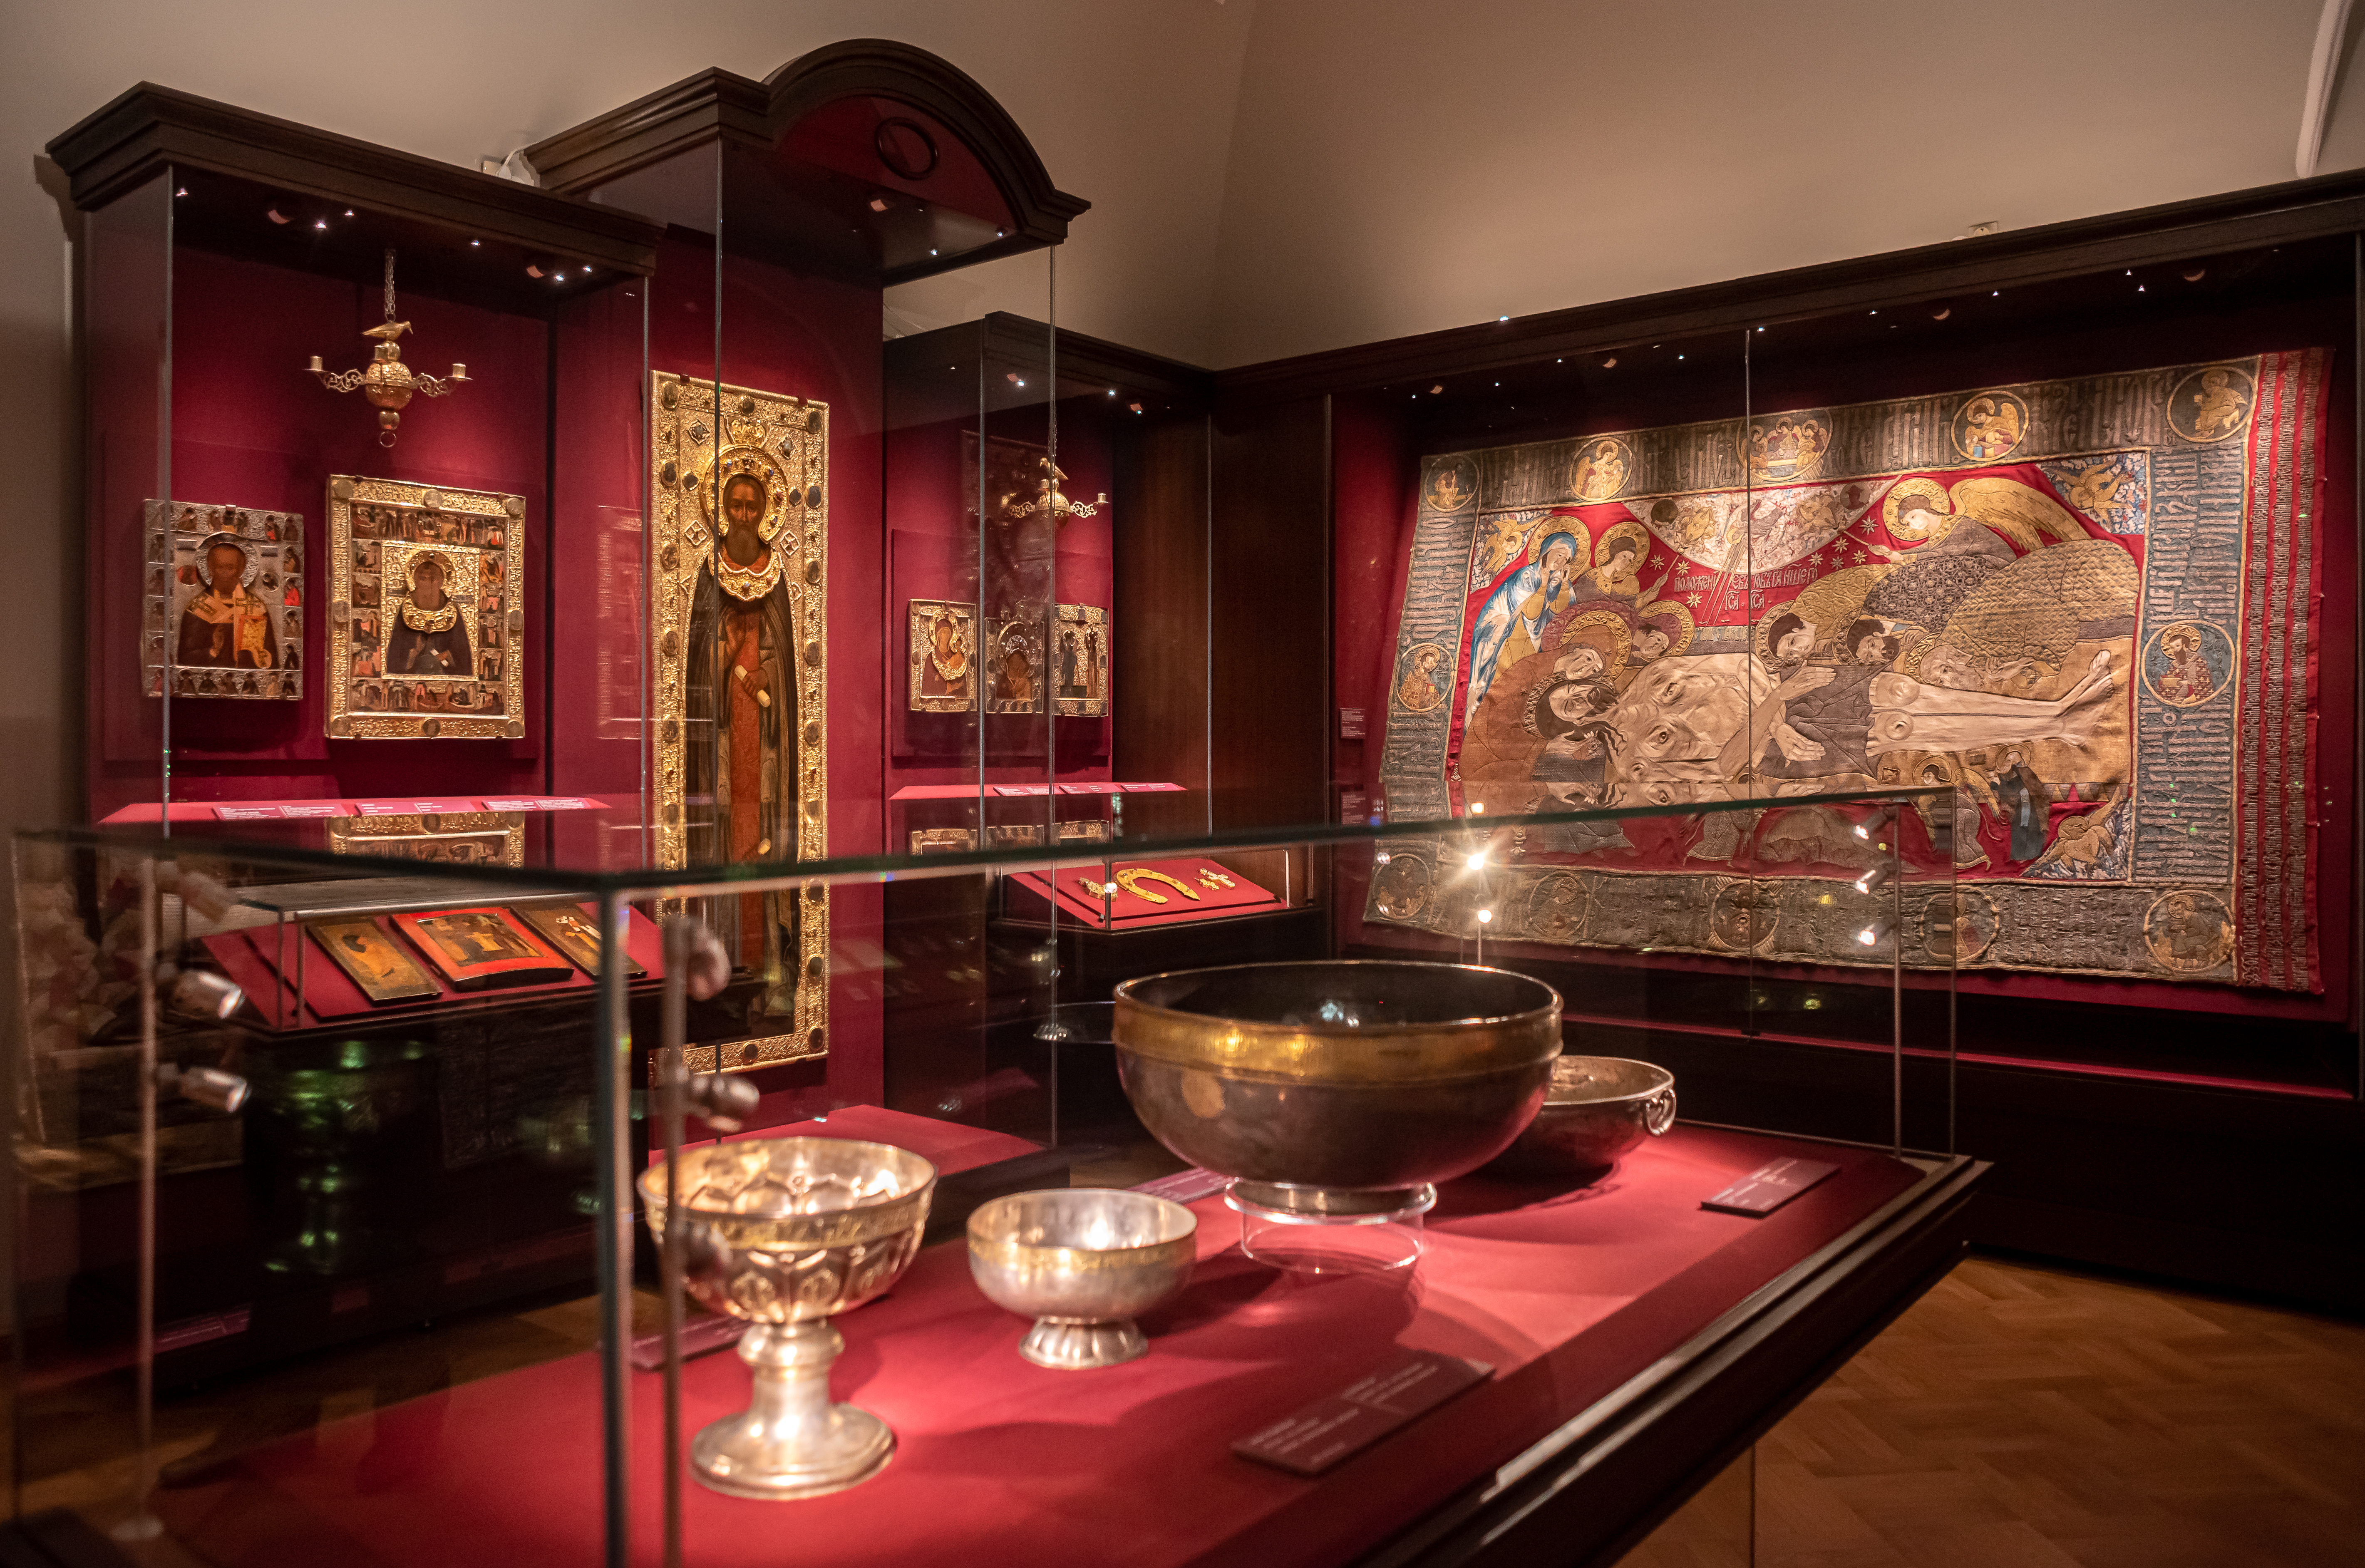 Музей был основан в 1920 году на основе собрания исторических и художественных ценностей Троице-Сергиевой Лавры